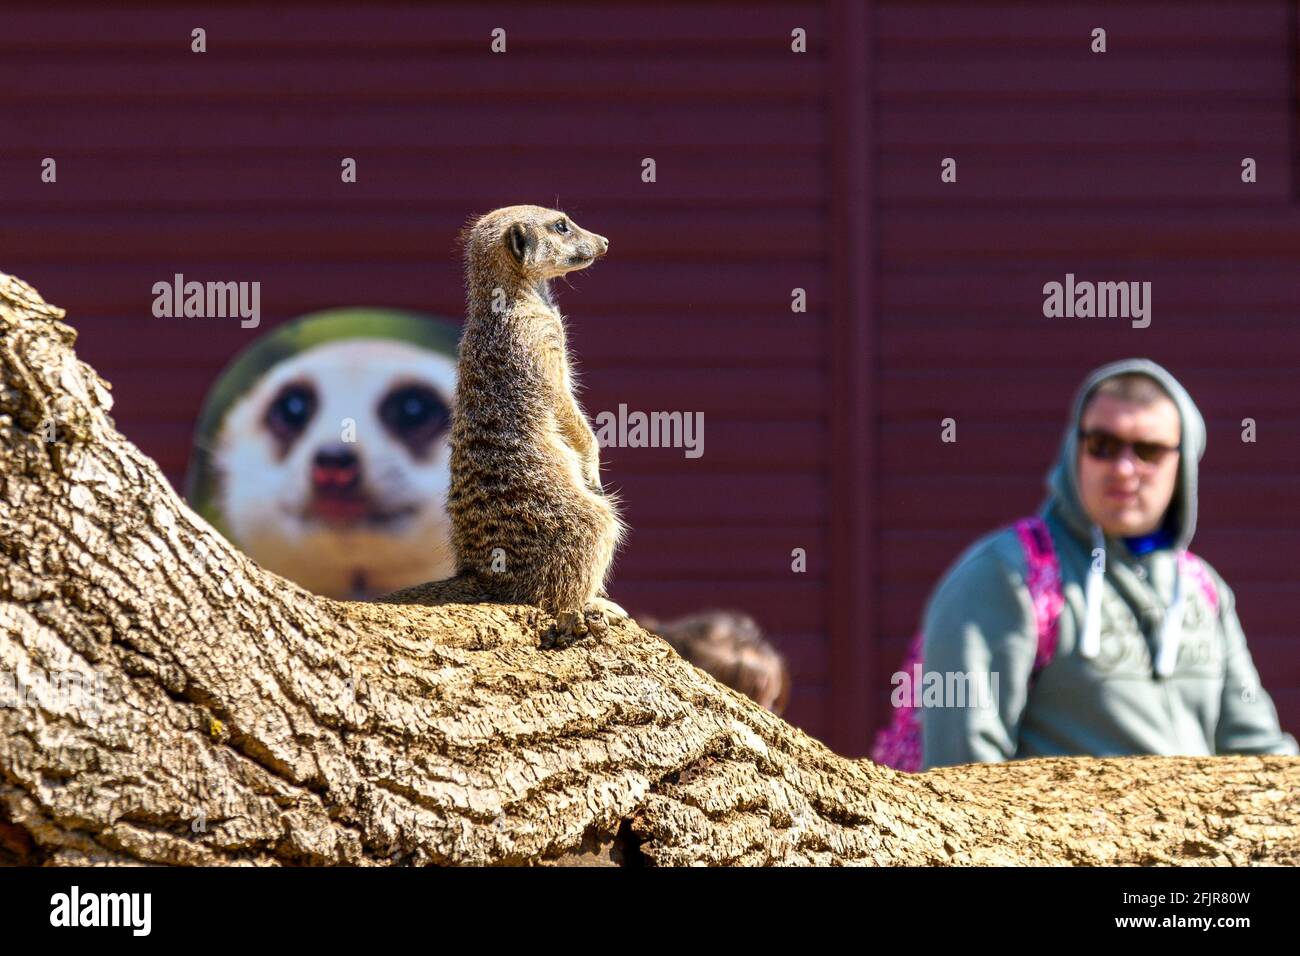 Winchester, Hampshire, Royaume-Uni, le 25 avril 2021. Le zoo de Marwell continue d'accueillir les visiteurs après sa réouverture au confinement du coronavirus. Un meerkat prend une position élevée pour regarder les gens regarder les meerkat. Crédit : Paul Biggins/Alamy Live News Banque D'Images